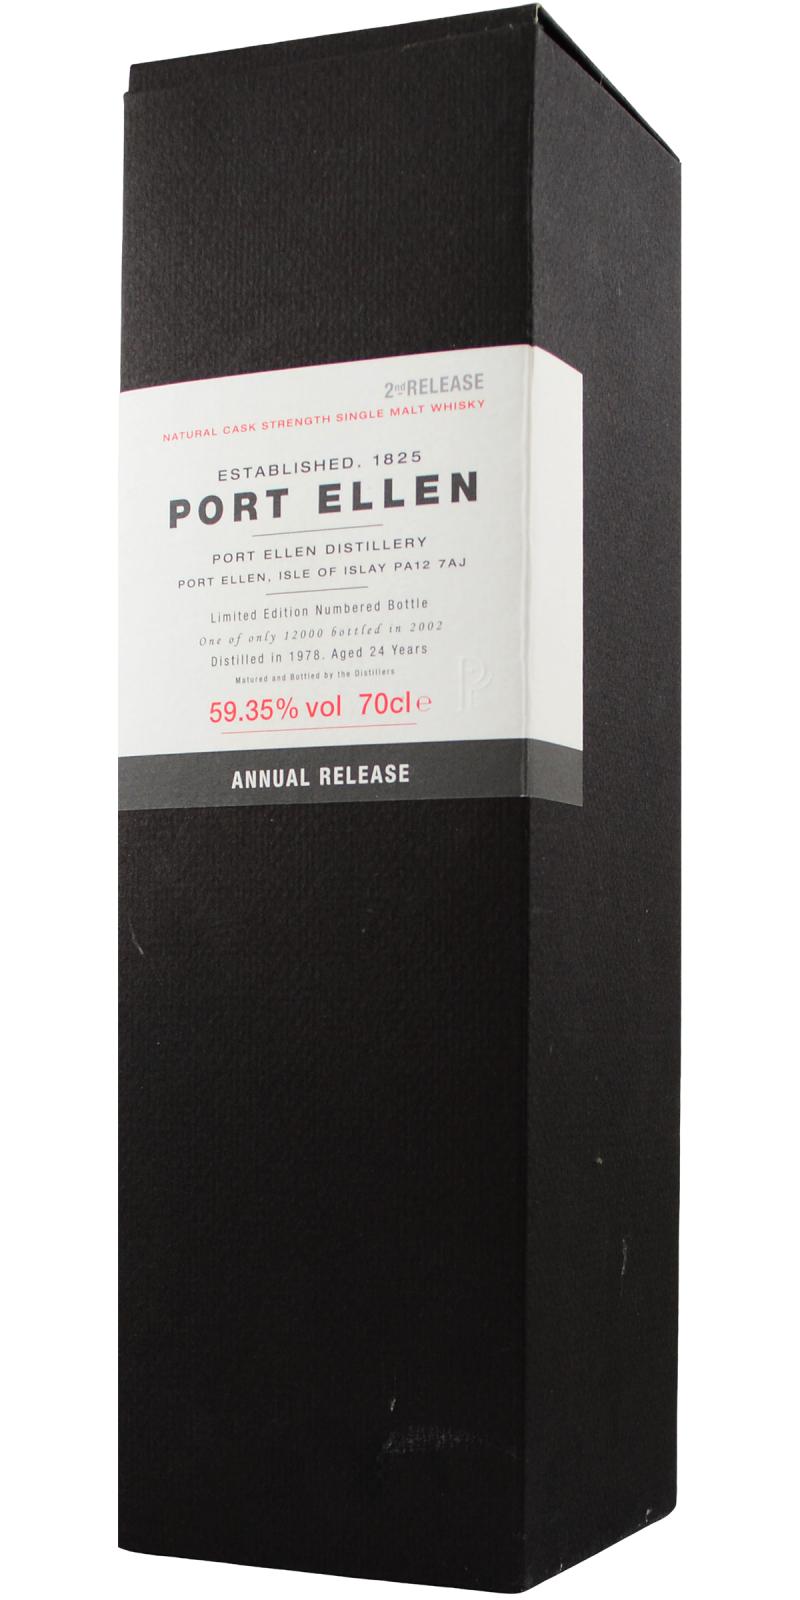 Port Ellen 2nd Release